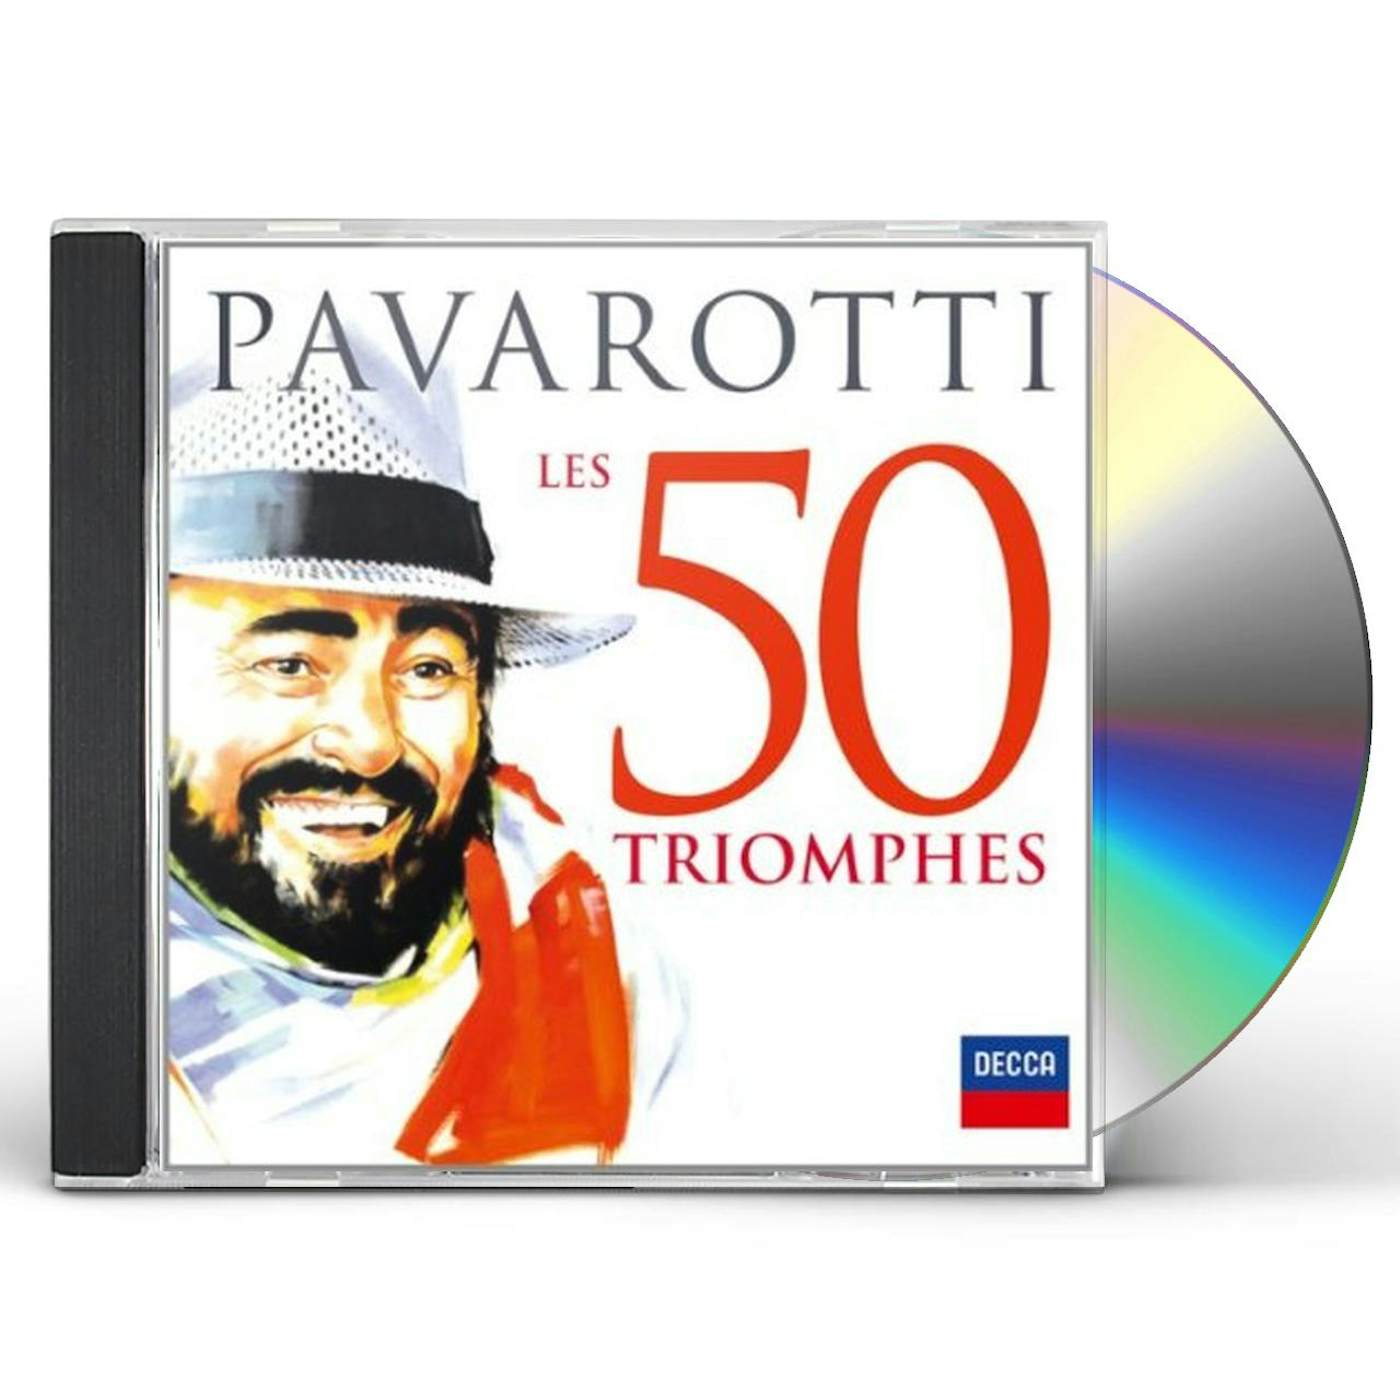 Luciano Pavarotti LES 50 TRIOMPHES CD